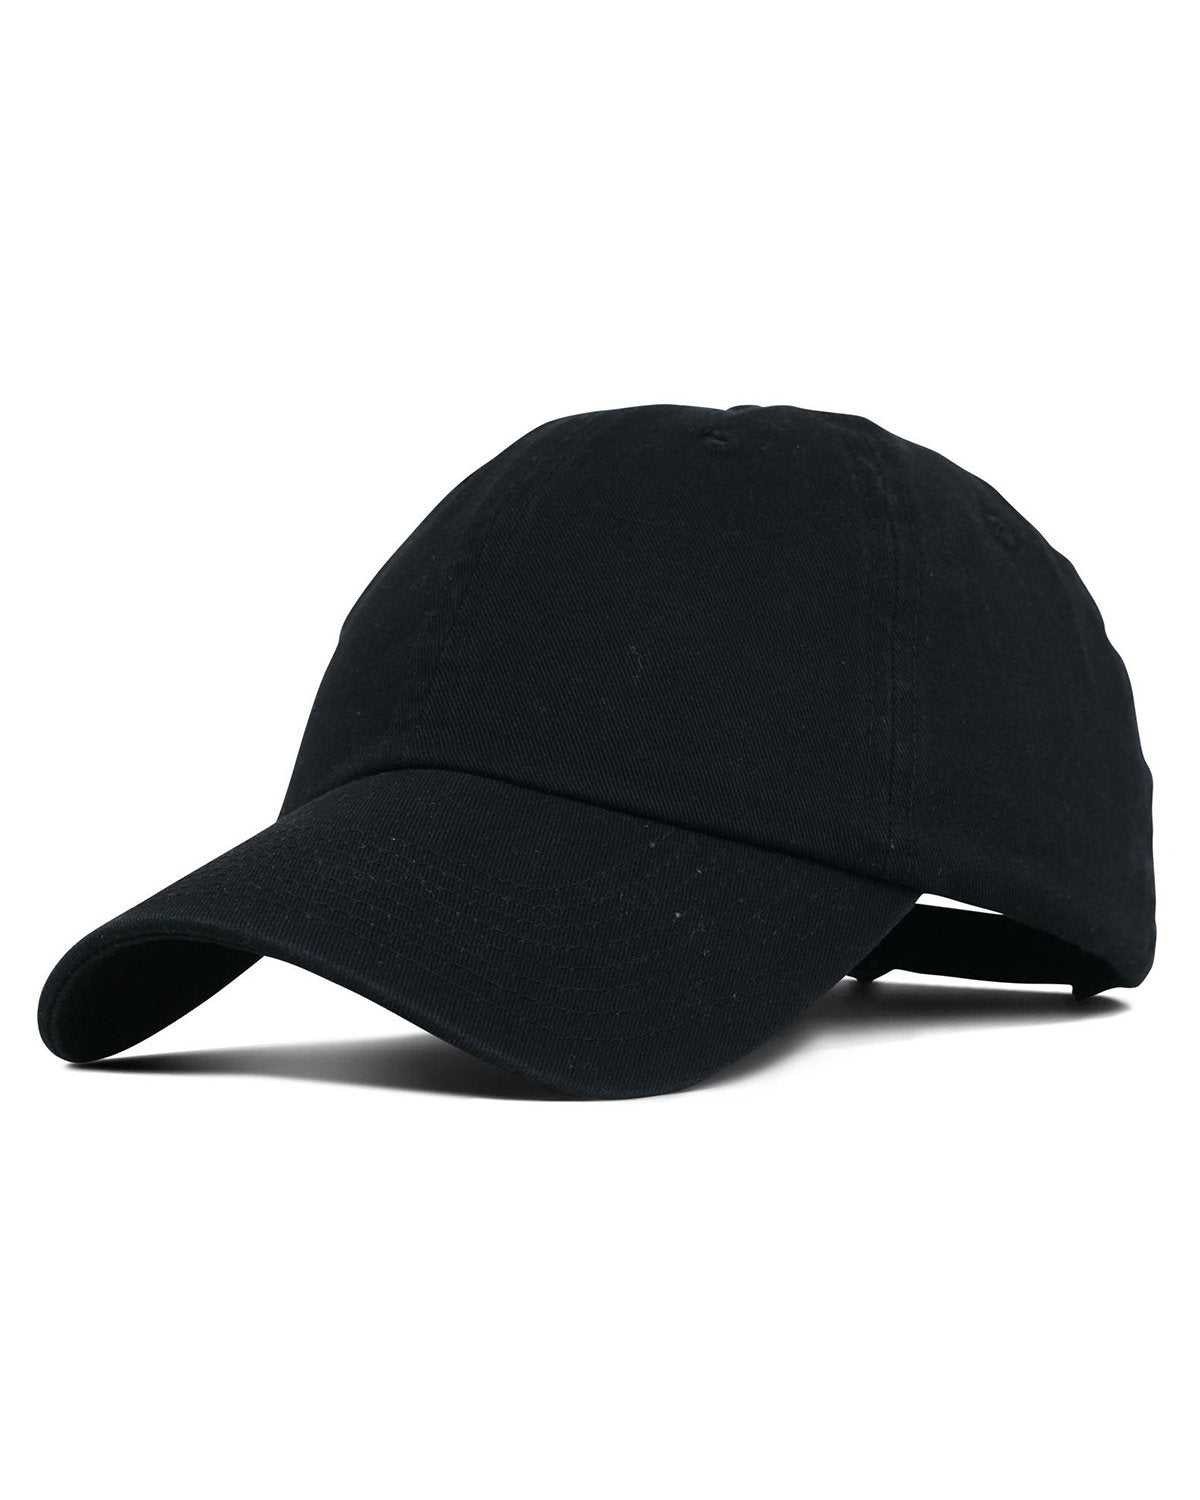 Fahrenheit F508 Garment Washed Cotton Cap - Black - HIT a Double - 1